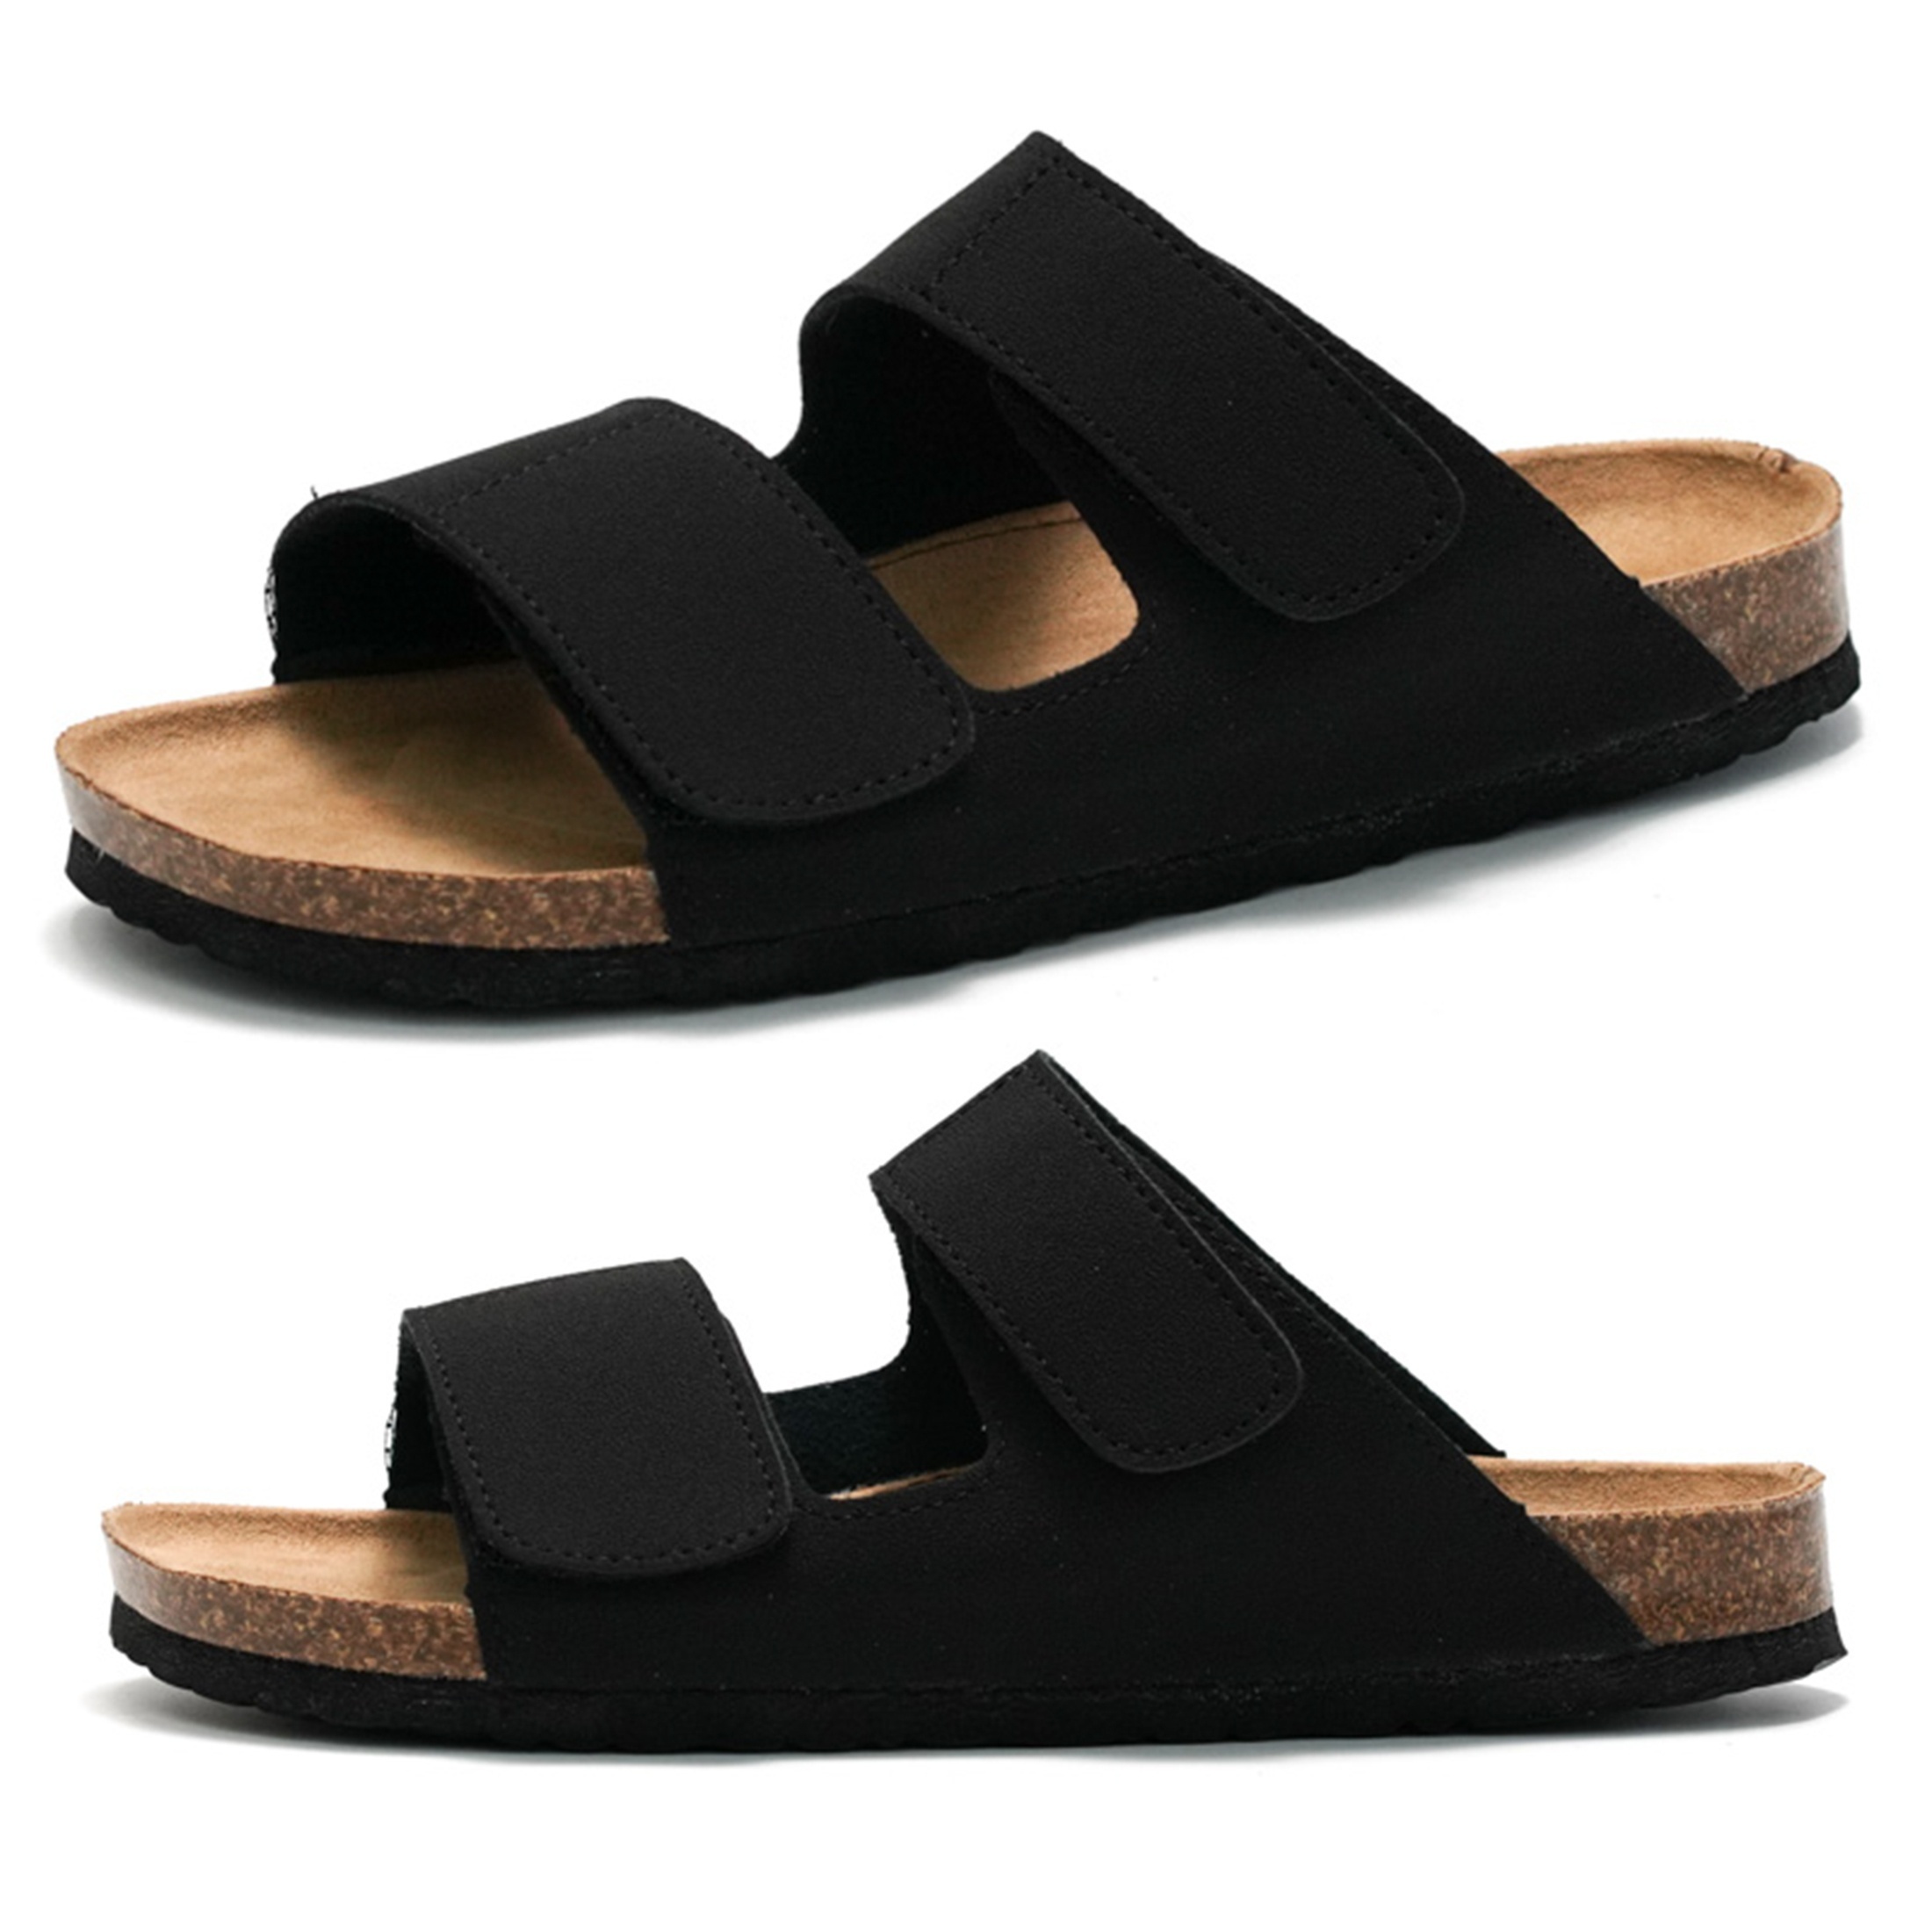 

Slide Sandals For Men With Soft Cork Footbed And Adjustable Strap, Fashion Platform Slide Sandals Comfortable Slip On Styles